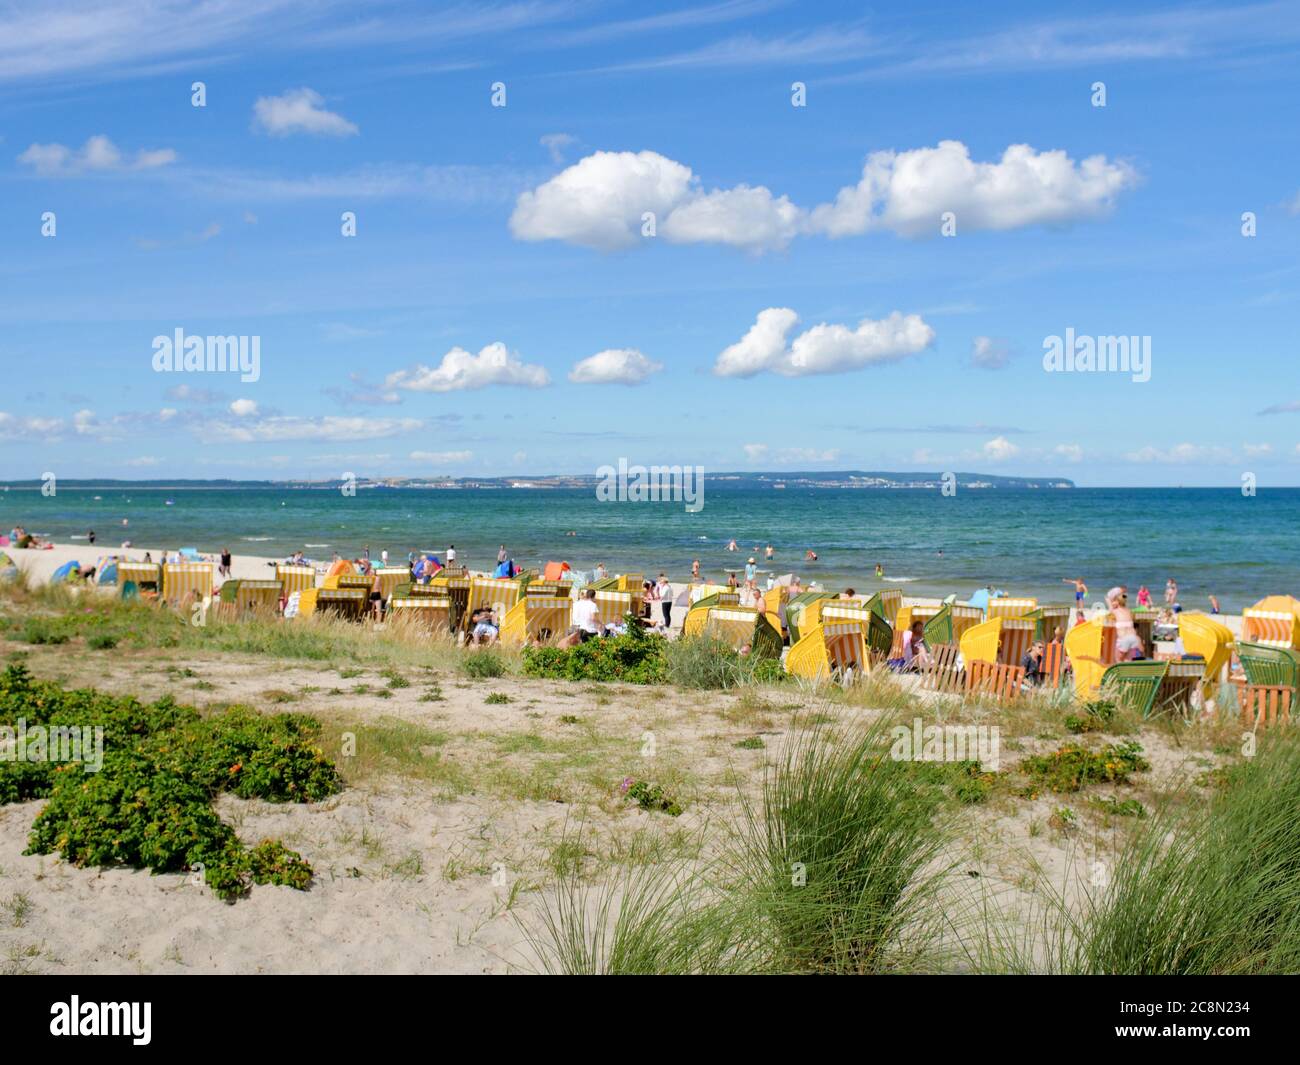 Strand in Binz auf der Insel Rügen an der Ostsee mit vielen Touristen am Badestrand während des Urlaubs in den Sommerferien, Strandkörbe mit Badegäste Stock Photo